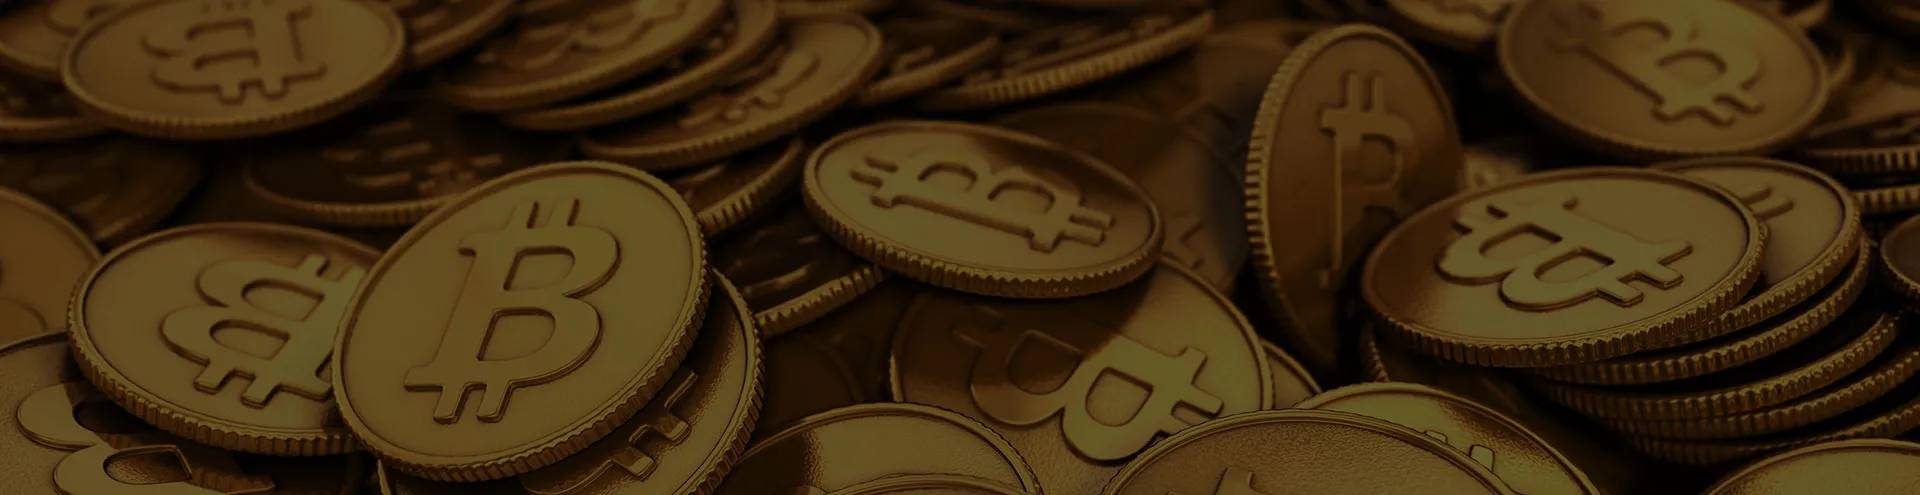 Bitcoin Code - Koja je razlika između Bitcoina i Bitcoin Casha?